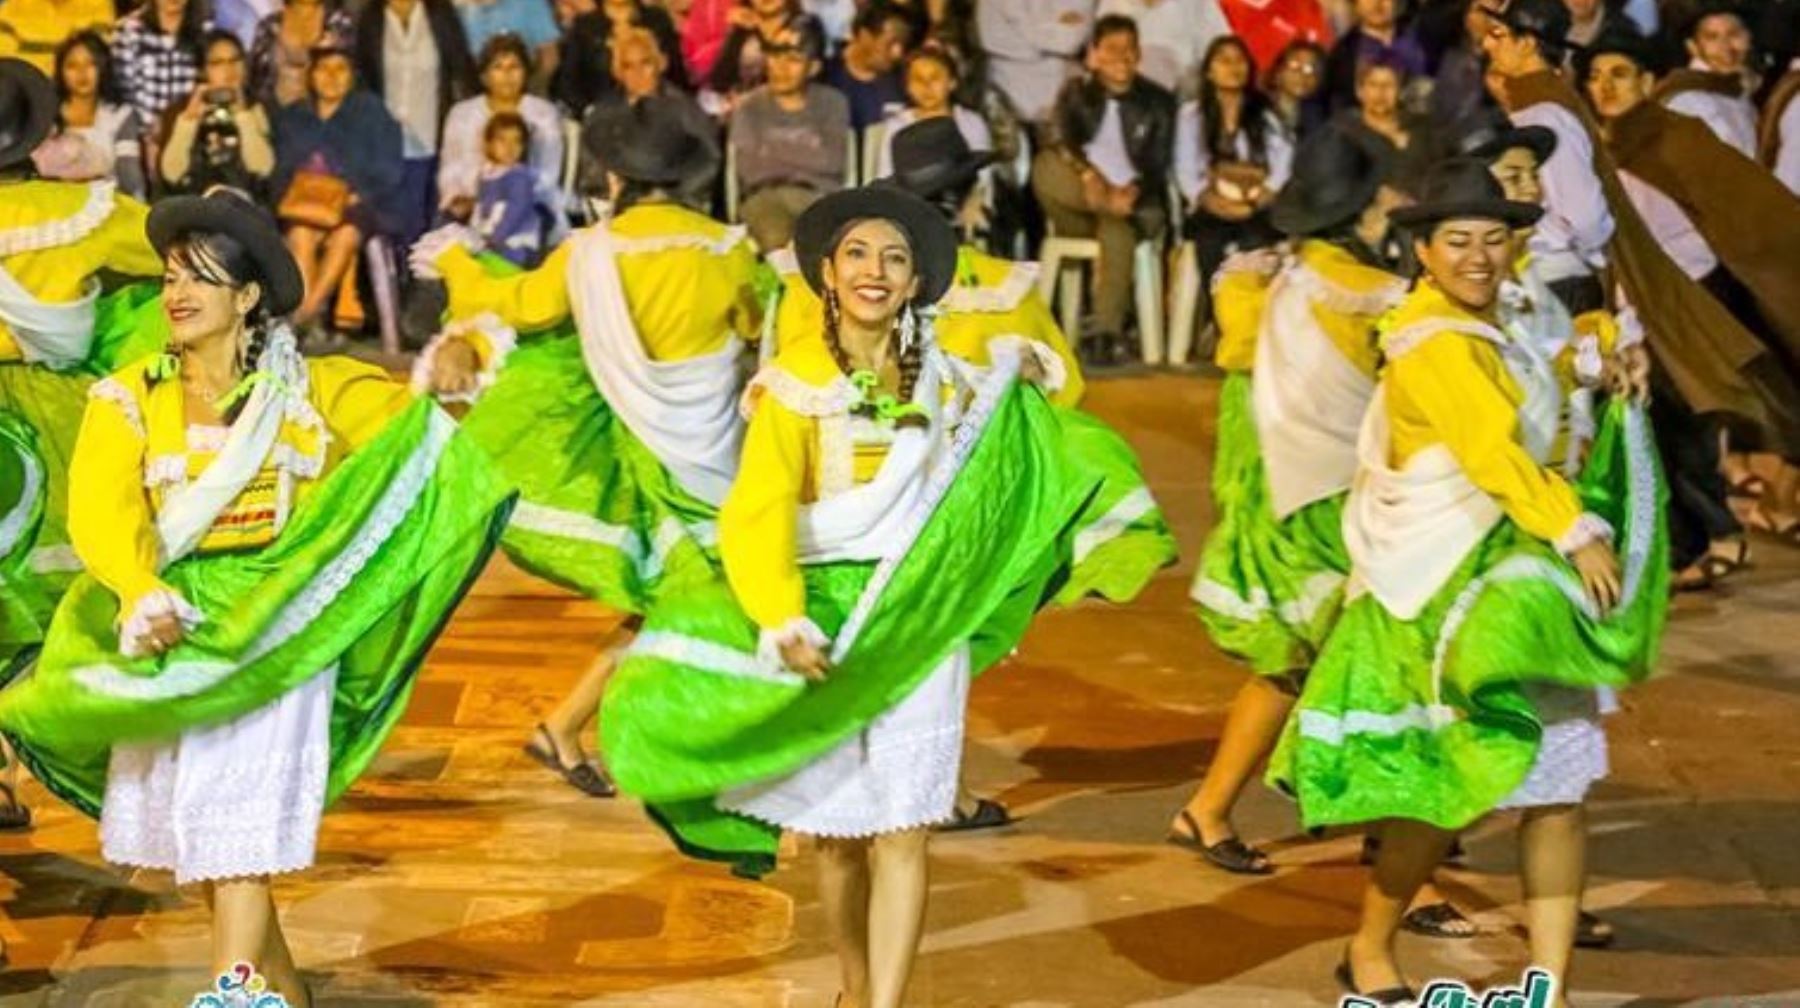 Espectacular desfile folclórico apreciarán en Huánuco los visitantes nacionales y extranjeros.